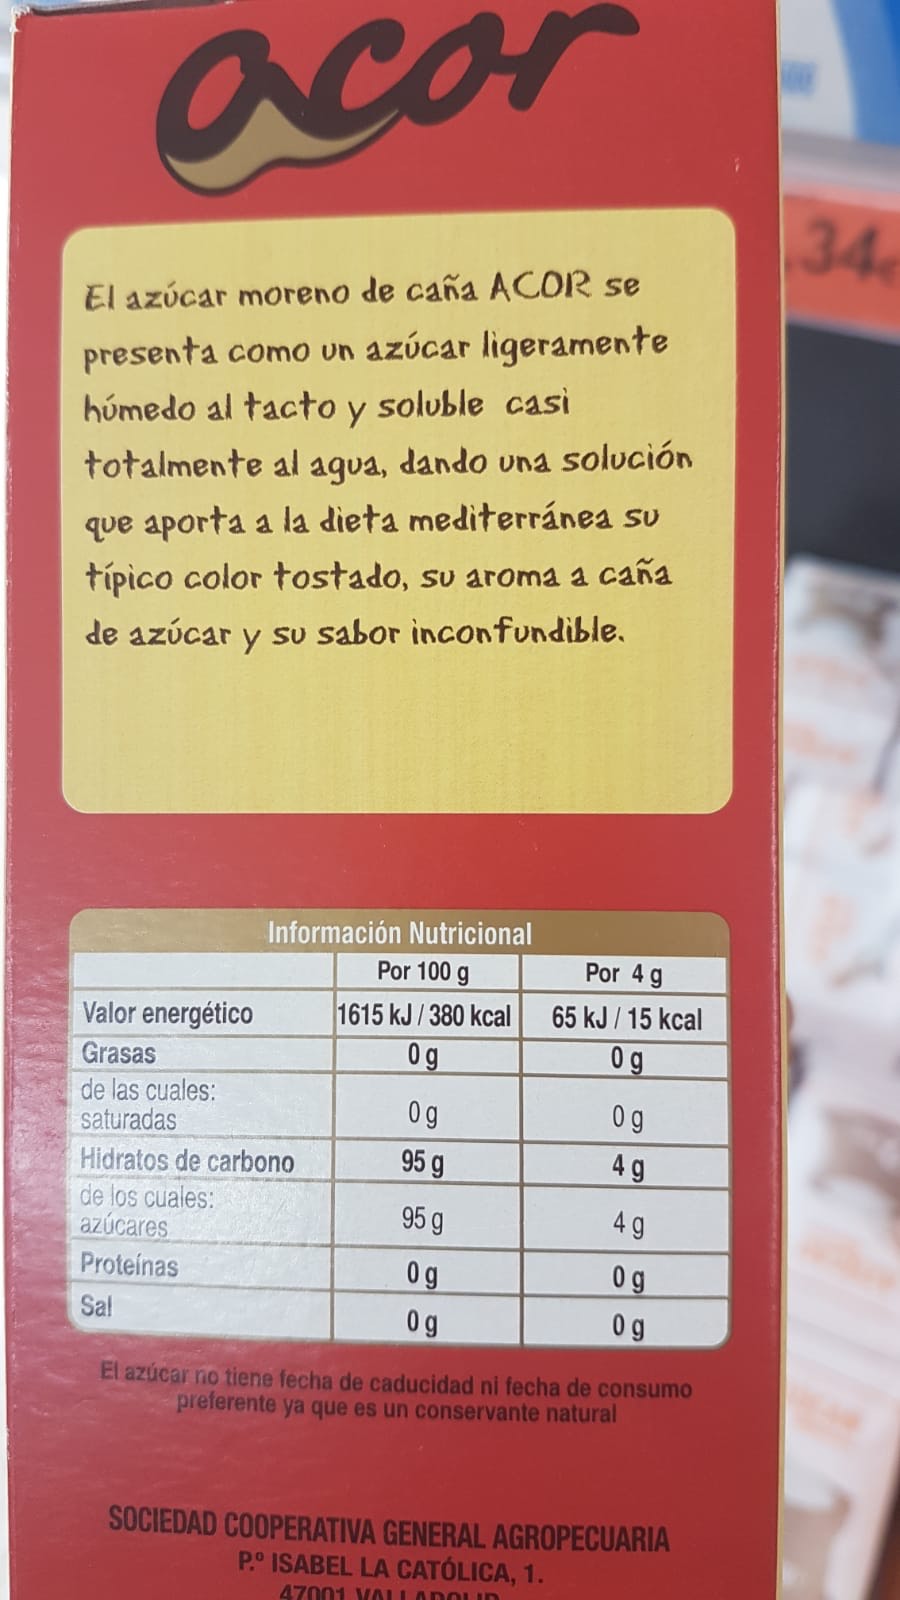 Du sucre de La Réunion vendu en Espagne